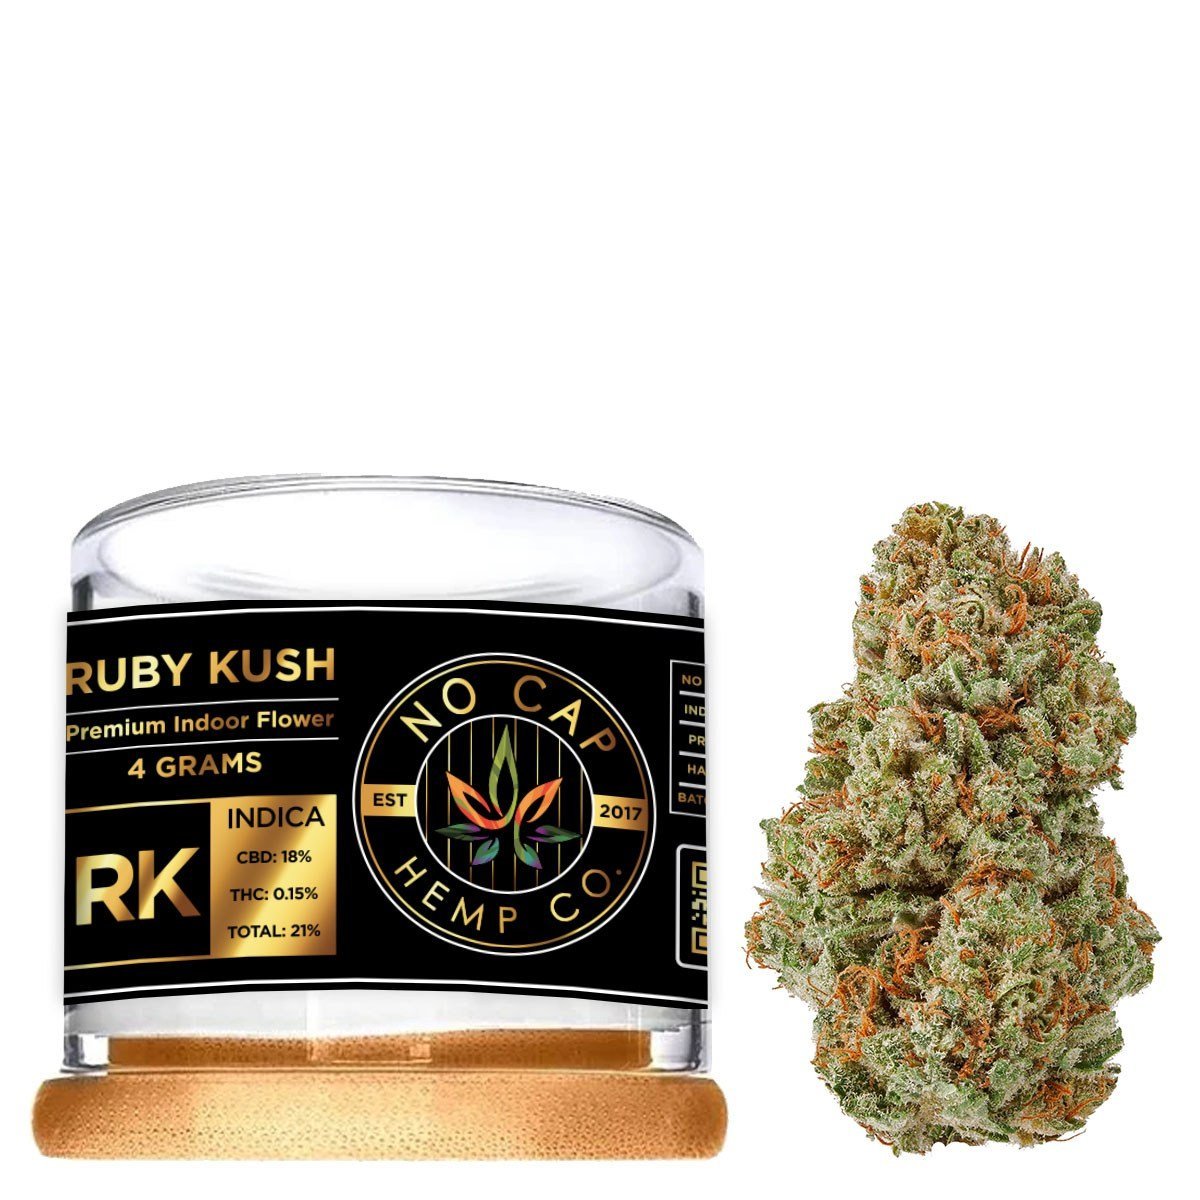 Black Label - Ruby Kush - 4 Gram Jar - No Cap Hemp Co.